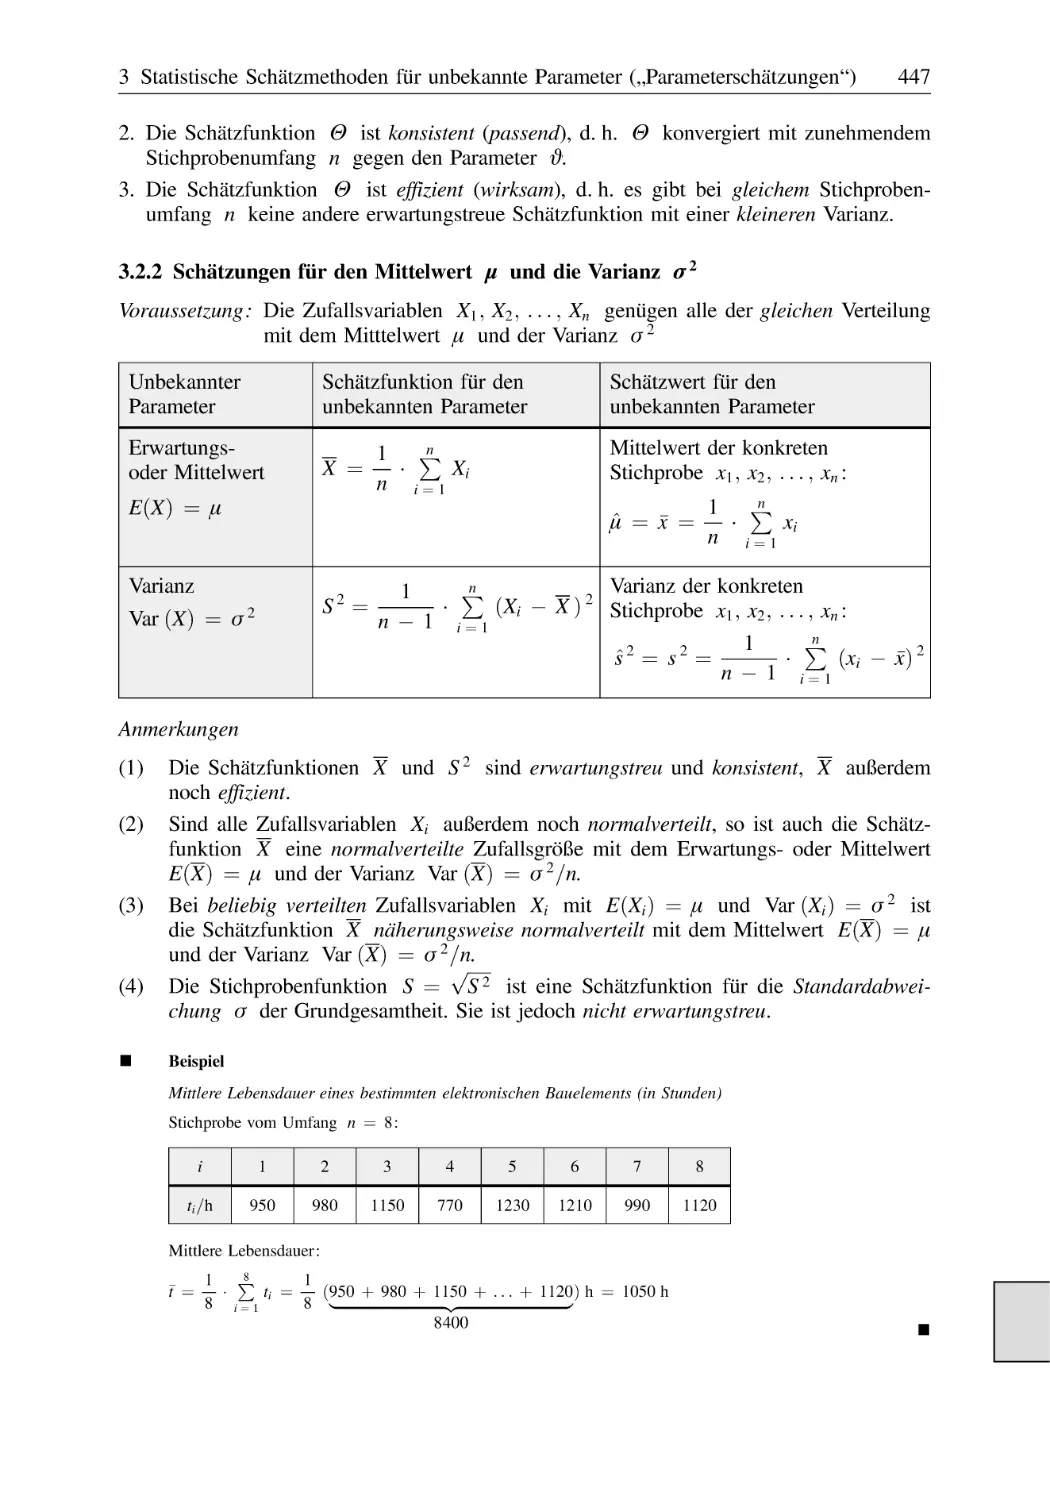 3.2.2 Schätzungen für den Mittelwert μ und die Varianz σ²